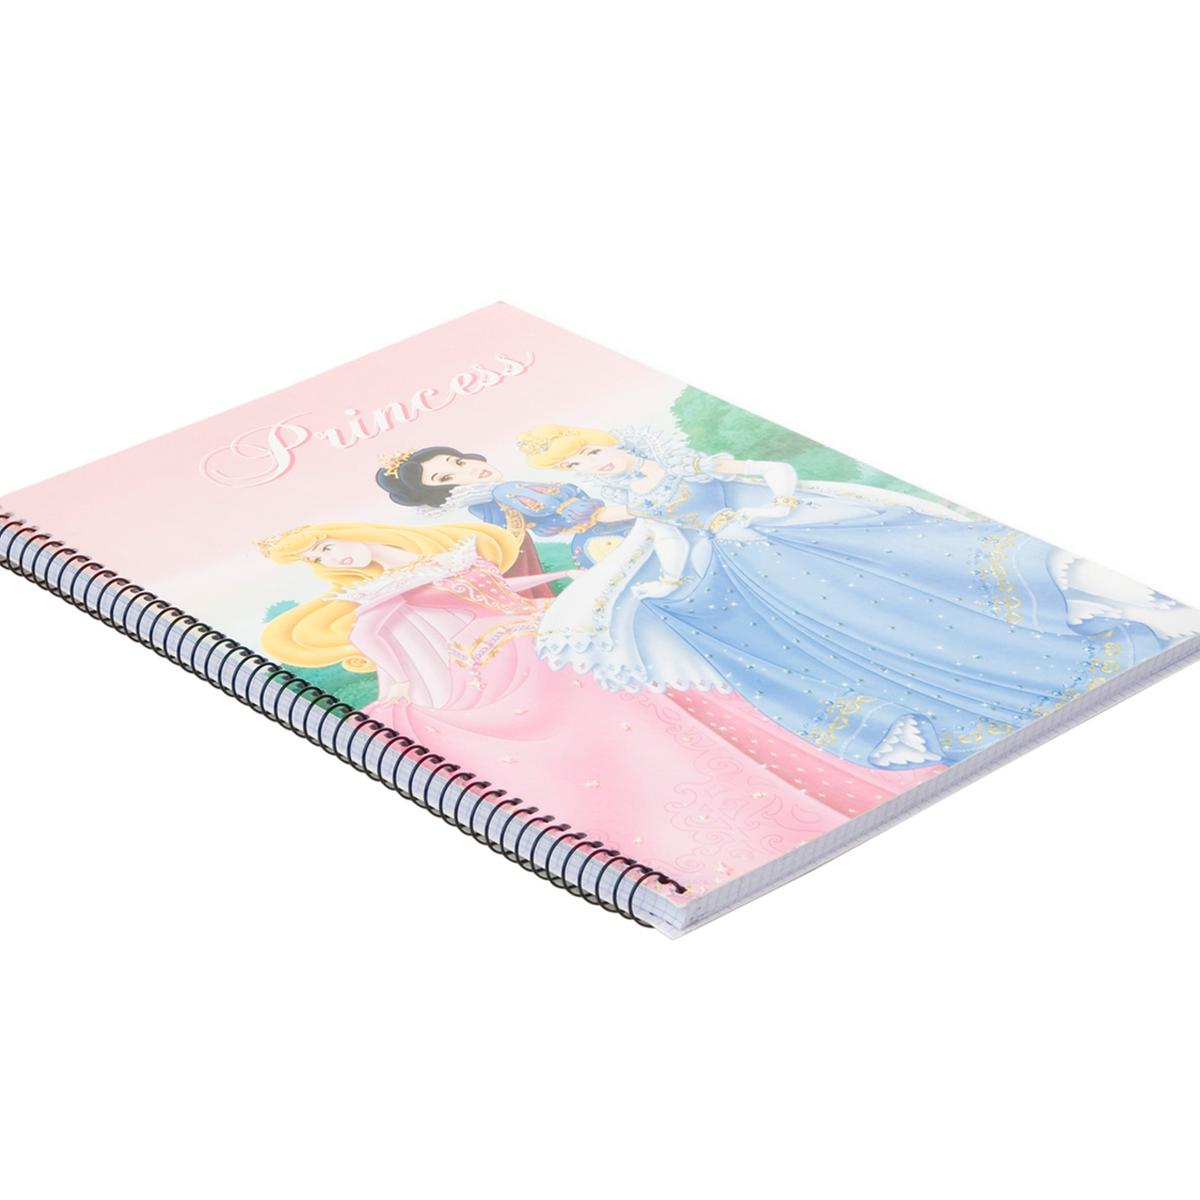 Princesas Disney - Cuaderno Escolar A4 (varios modelos) | Princesas Disney  | Toys"R"Us España